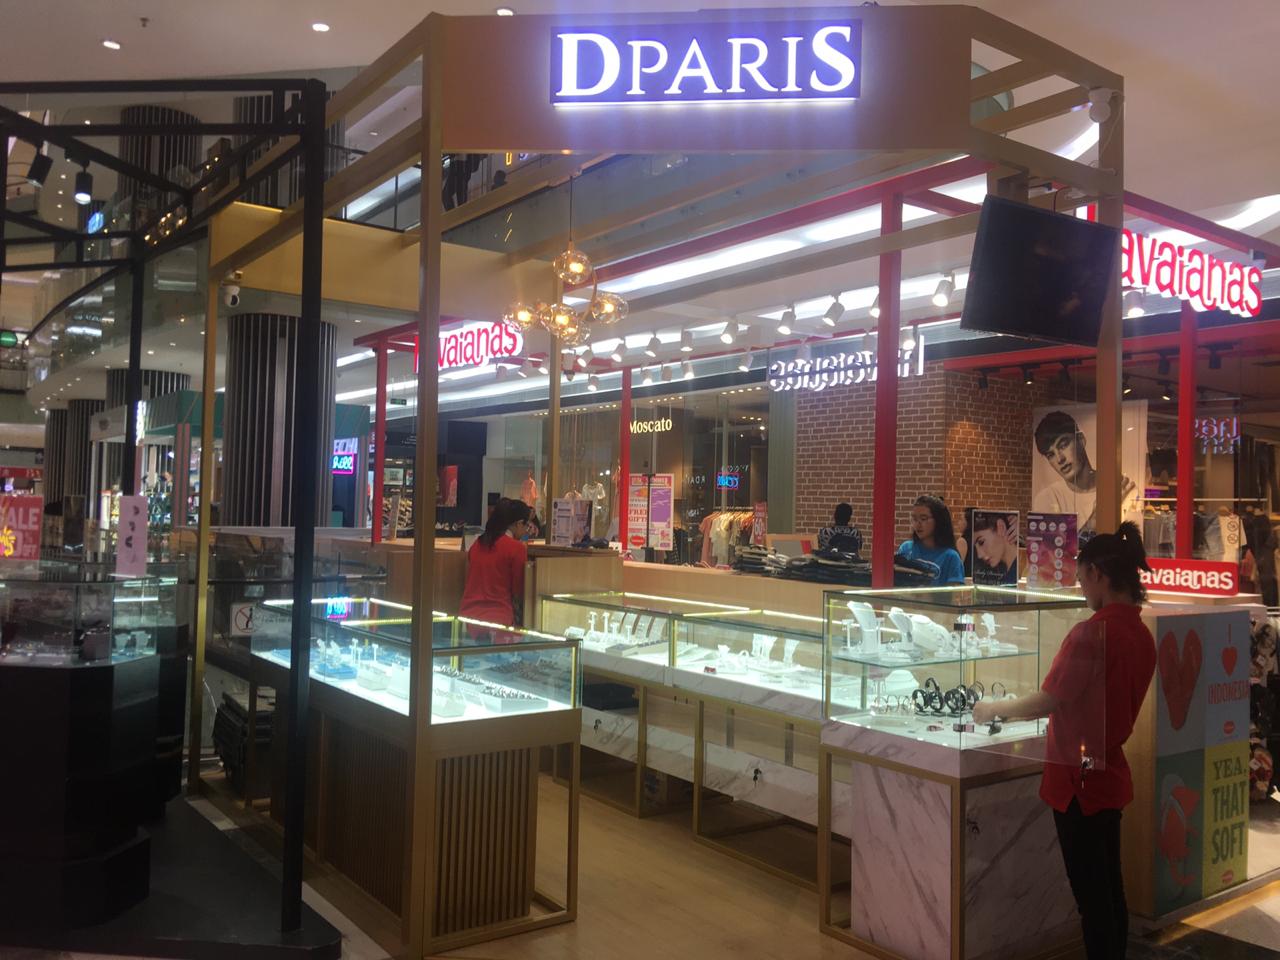 Dparis shop front in lippo mall puri st. moritz